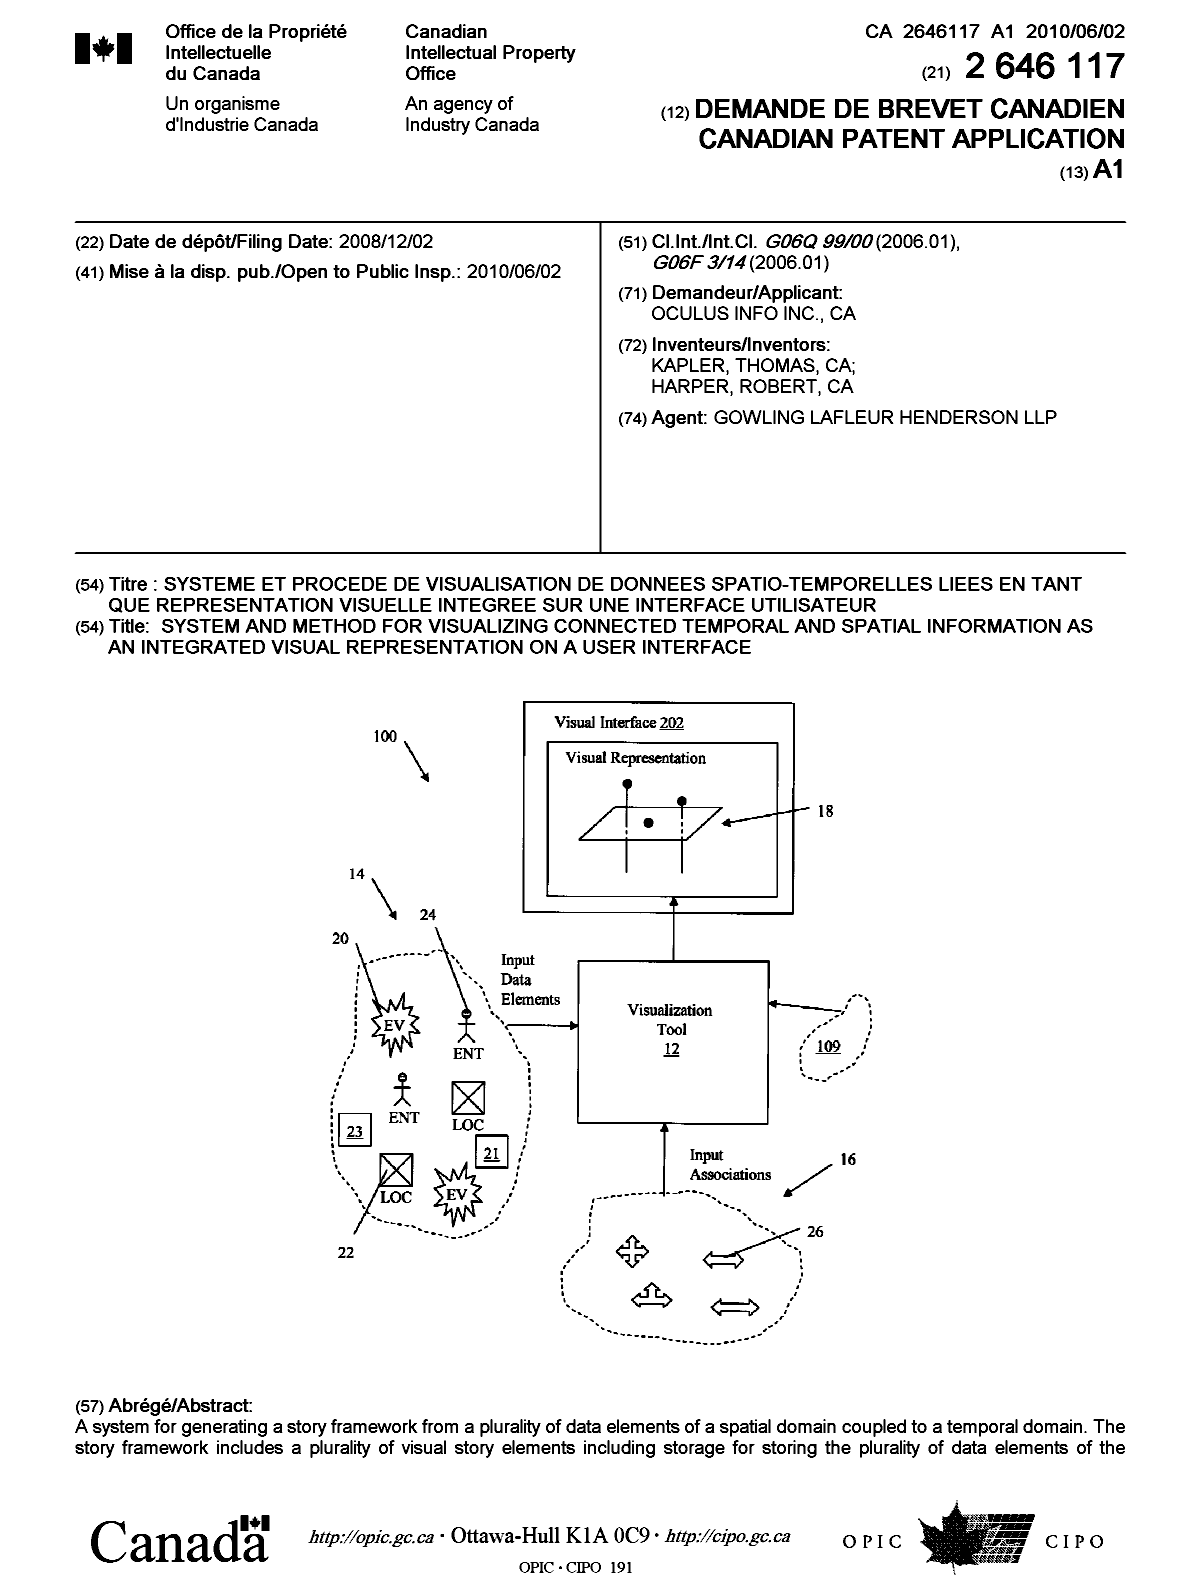 Document de brevet canadien 2646117. Page couverture 20100518. Image 1 de 2